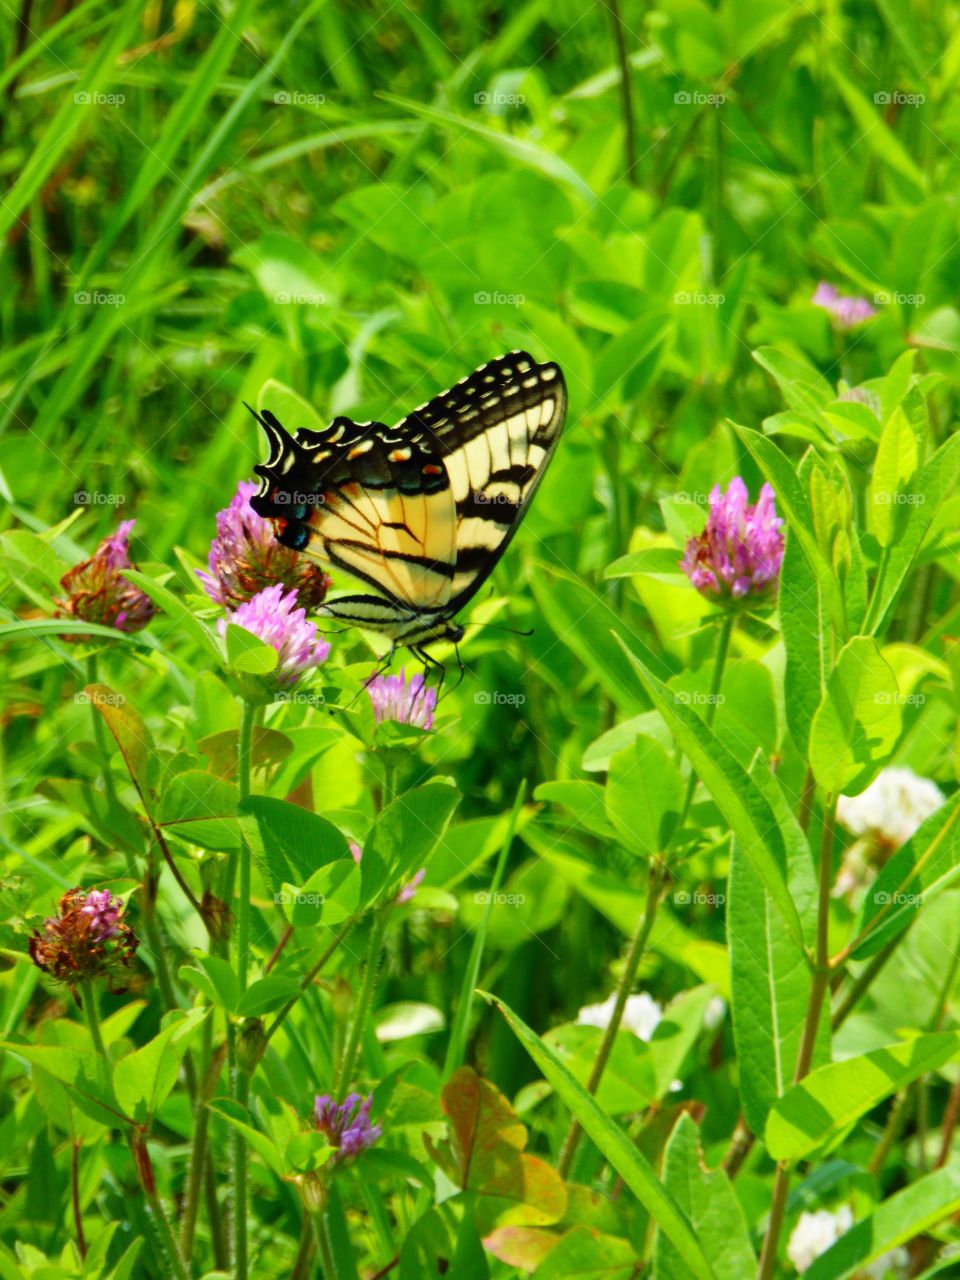 Butterfly in a field 7